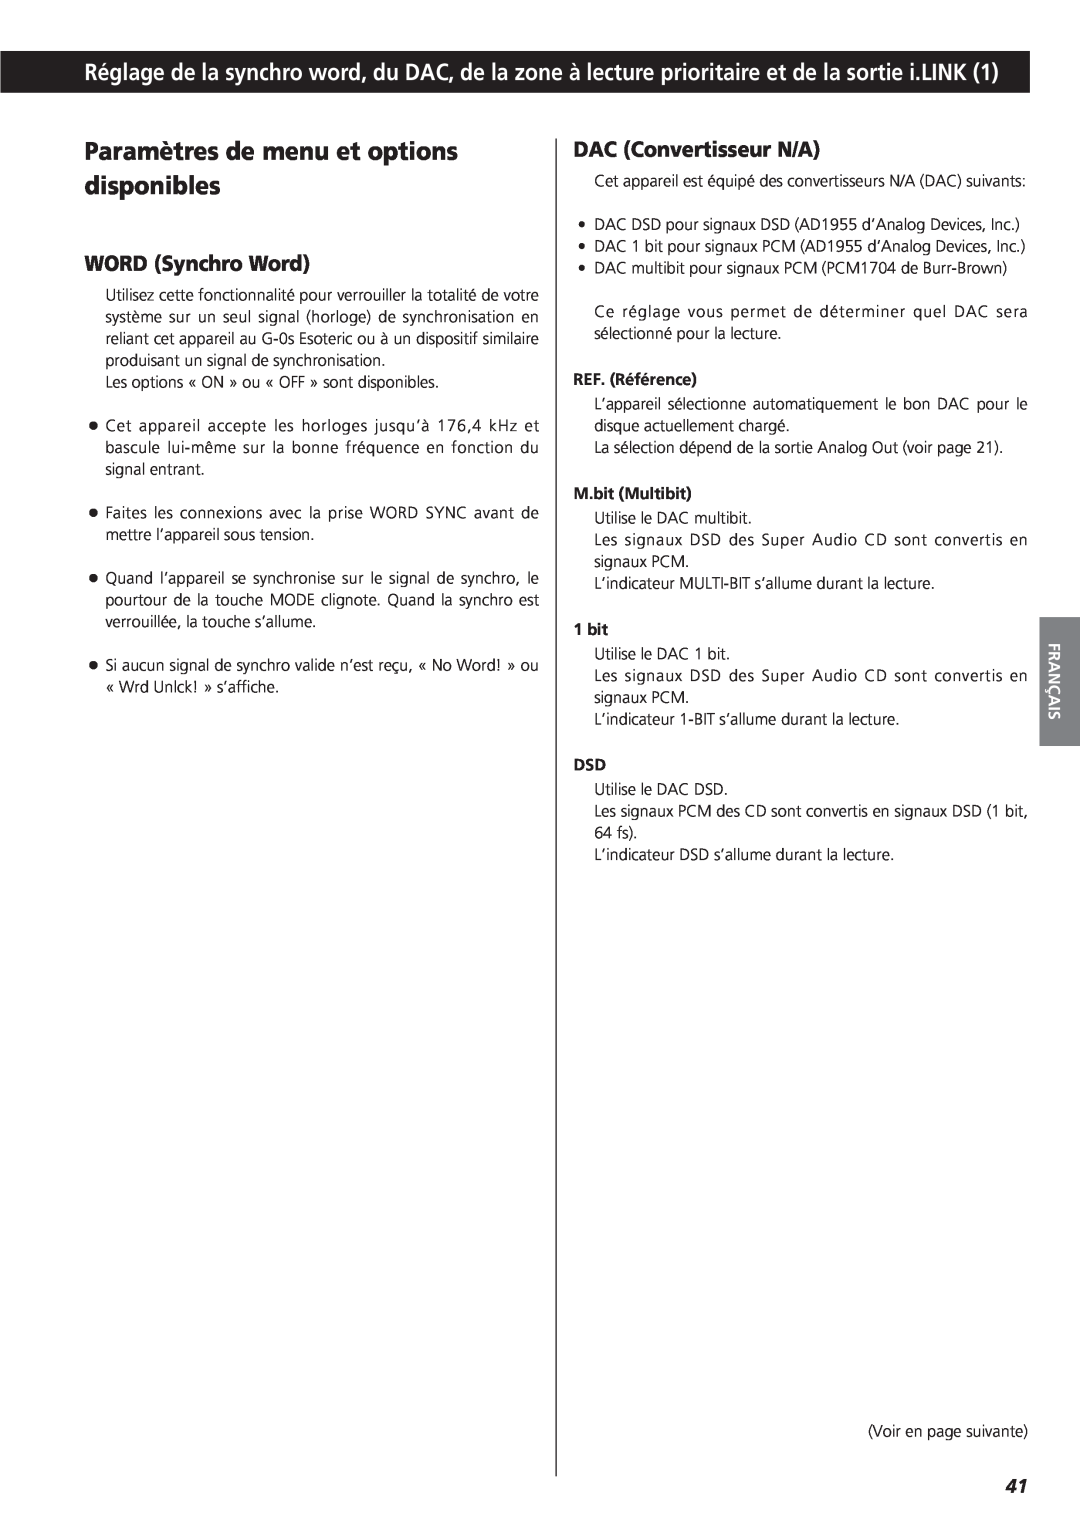 Teac X-01 D2 owner manual Paramètres de menu et options disponibles, WORD Synchro Word, DAC Convertisseur N/A, Français 